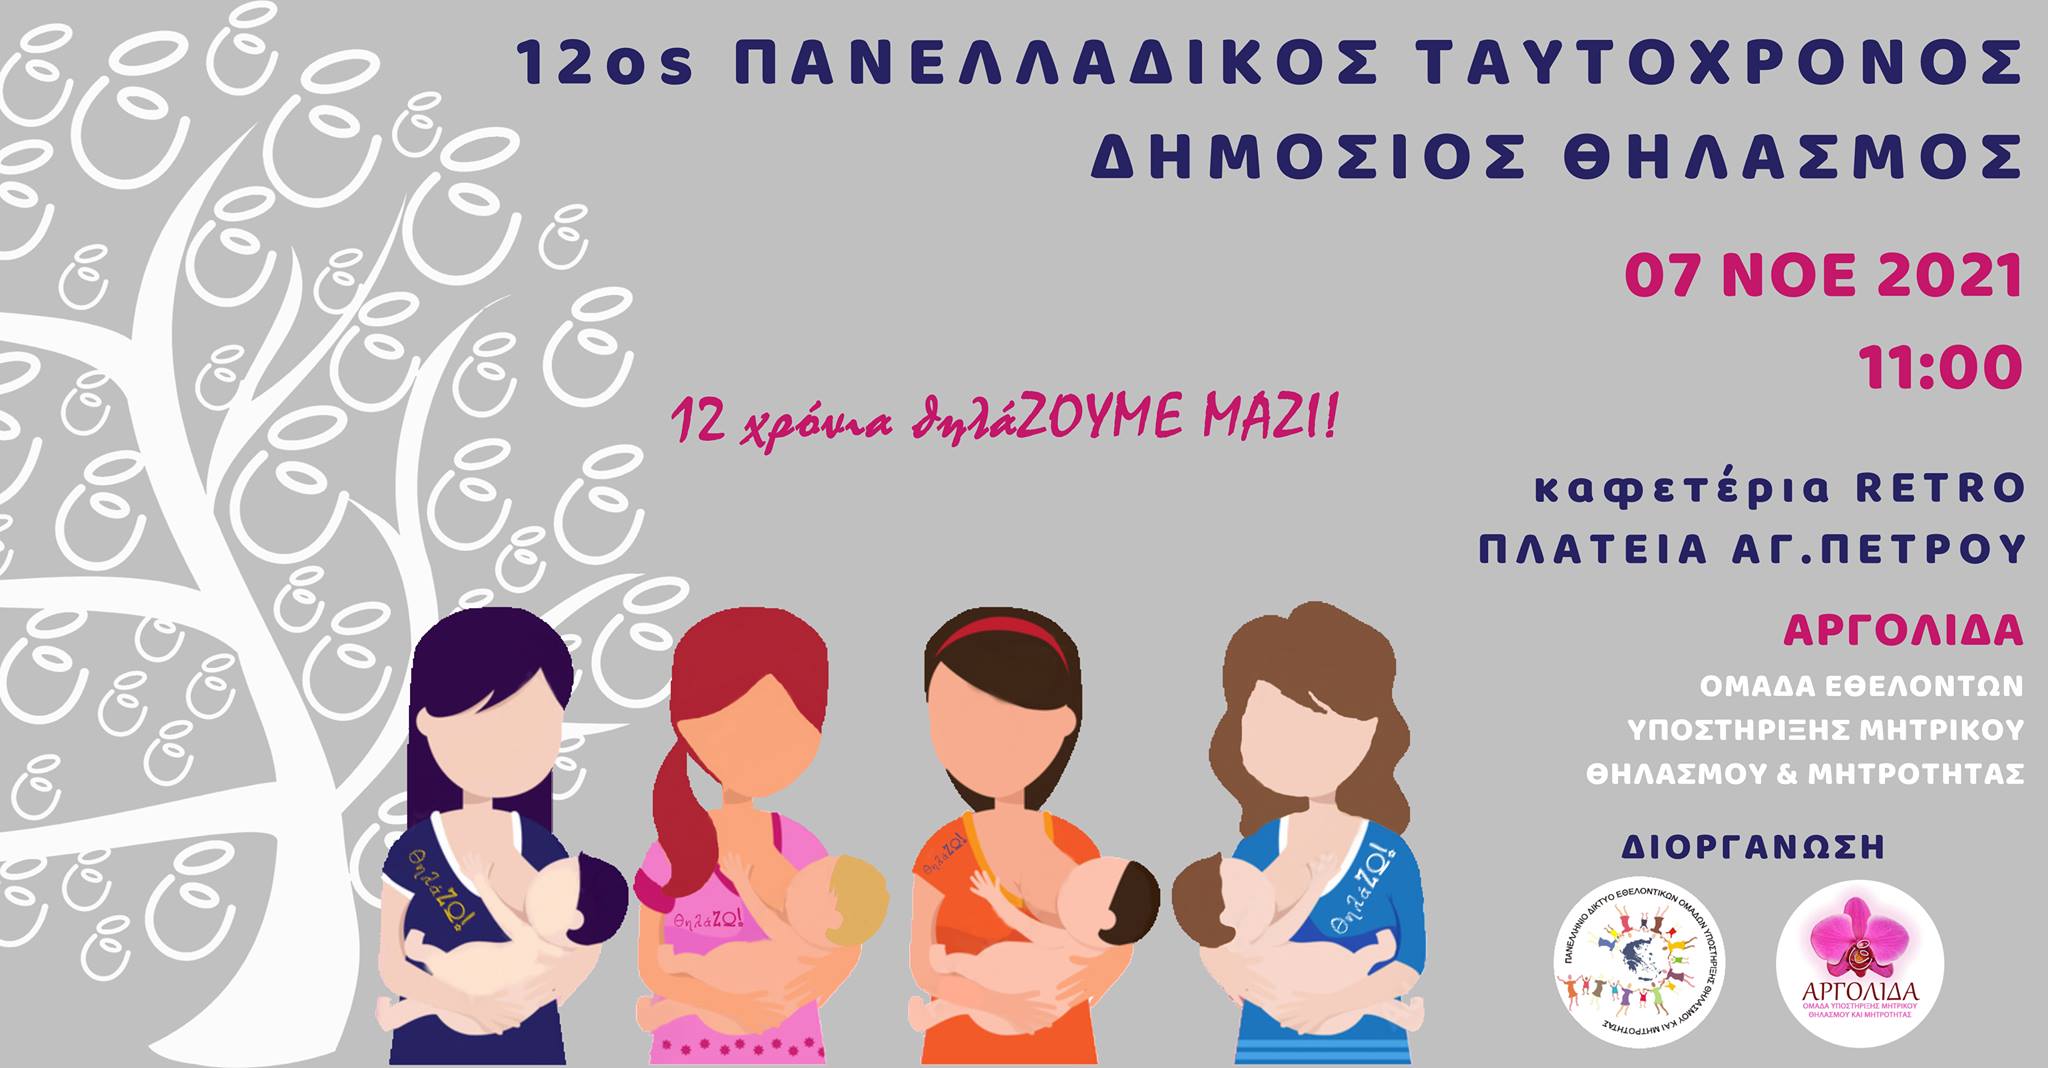 Ραντεβού στο Άργος για μία γιορτή στο μητρικό θηλασμό